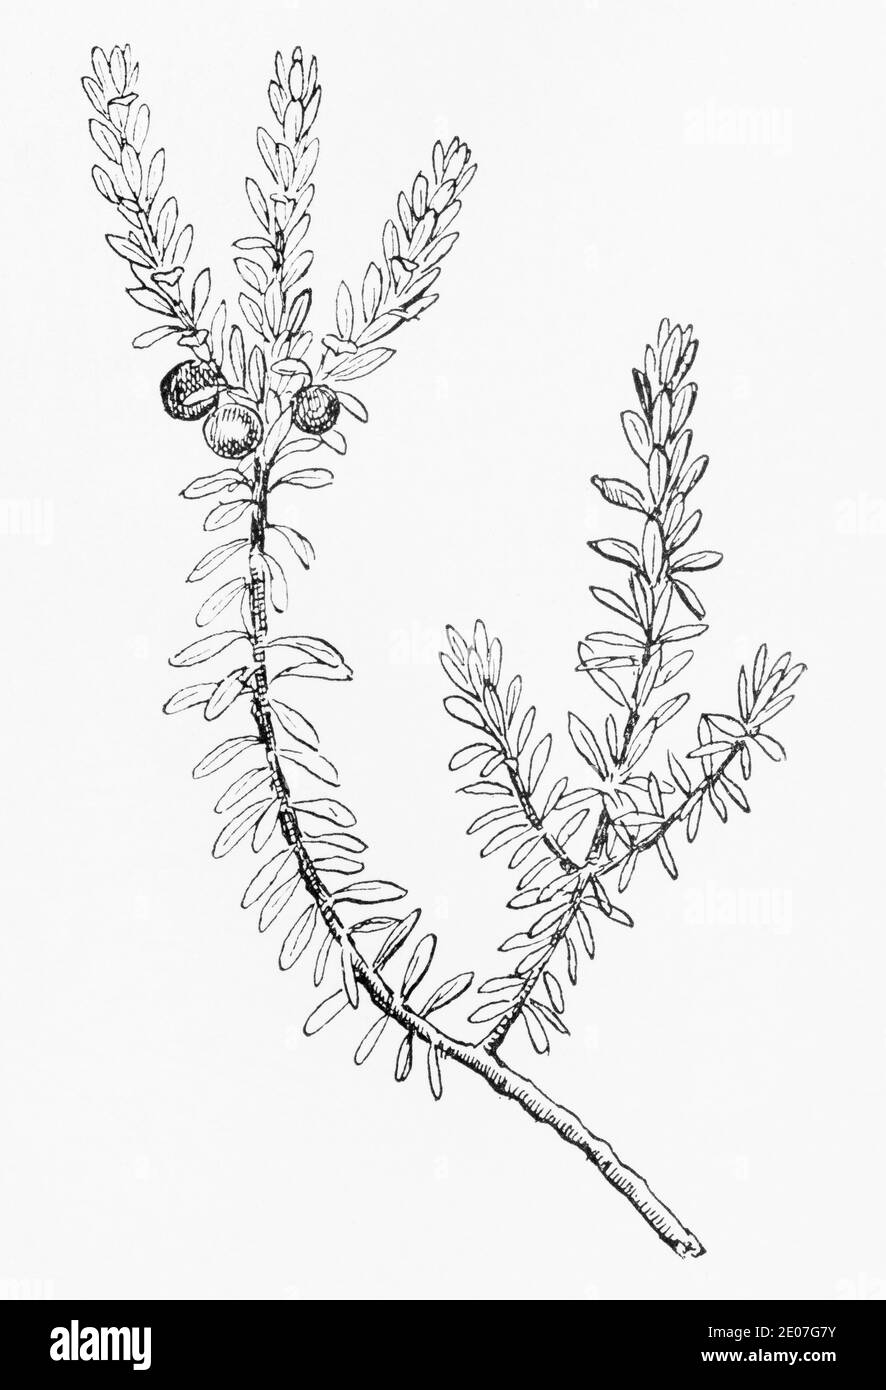 Ancienne gravure d'illustration botanique de Crowberry / Empetrum nigrum. Plante médicinale traditionnelle. Voir Remarques Banque D'Images